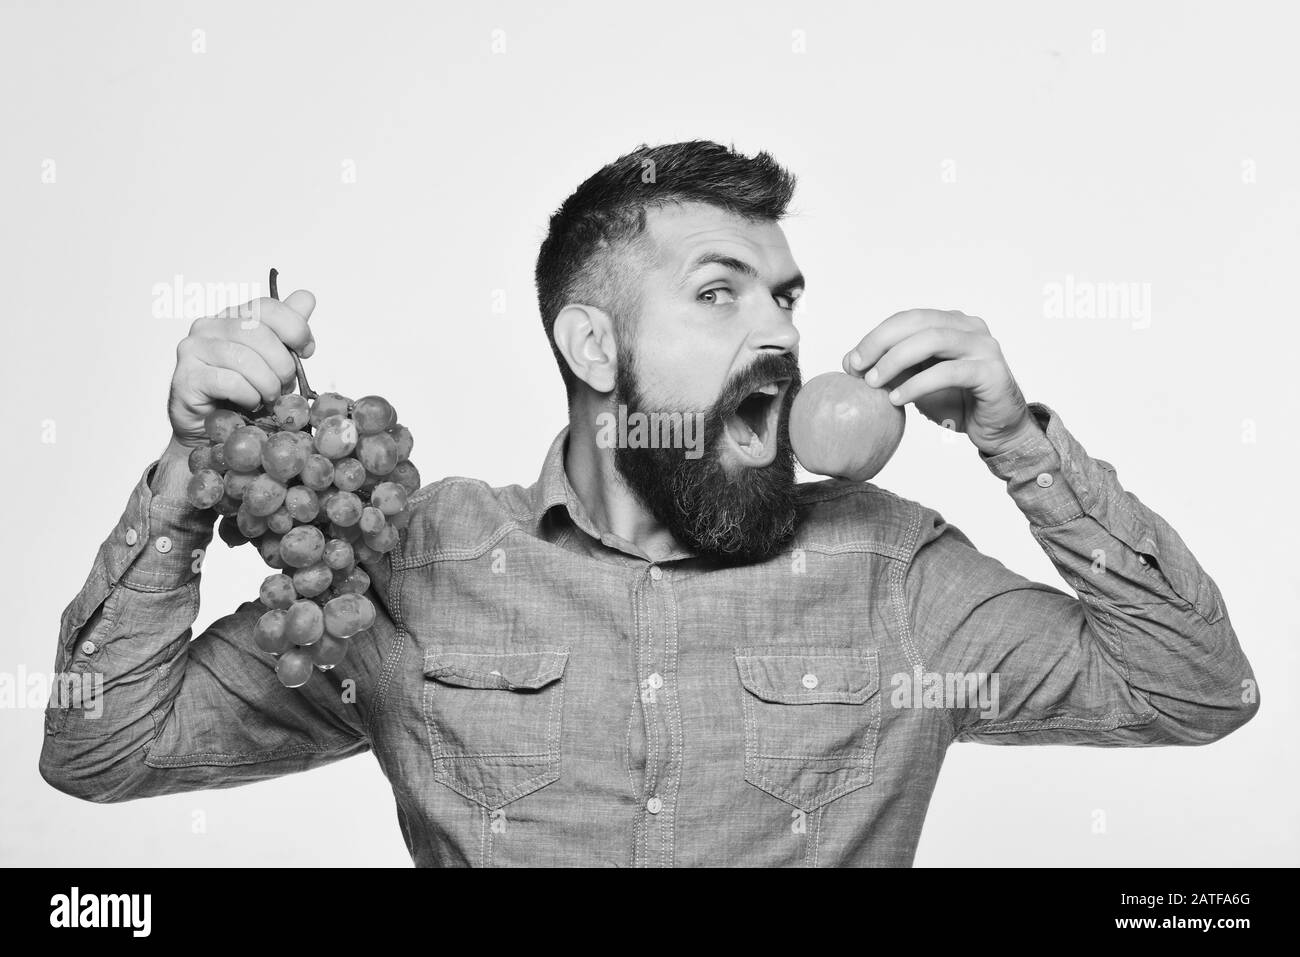 Winzer mit hungerndem Gesicht halten Trauben und Früchte. Bauer zeigt seine Ernte. Konzept für Weinbereitung und Herbstfrüchte. Mann mit Bart hält einen Haufen grüner Trauben und apfel isoliert auf weißem Grund Stockfoto